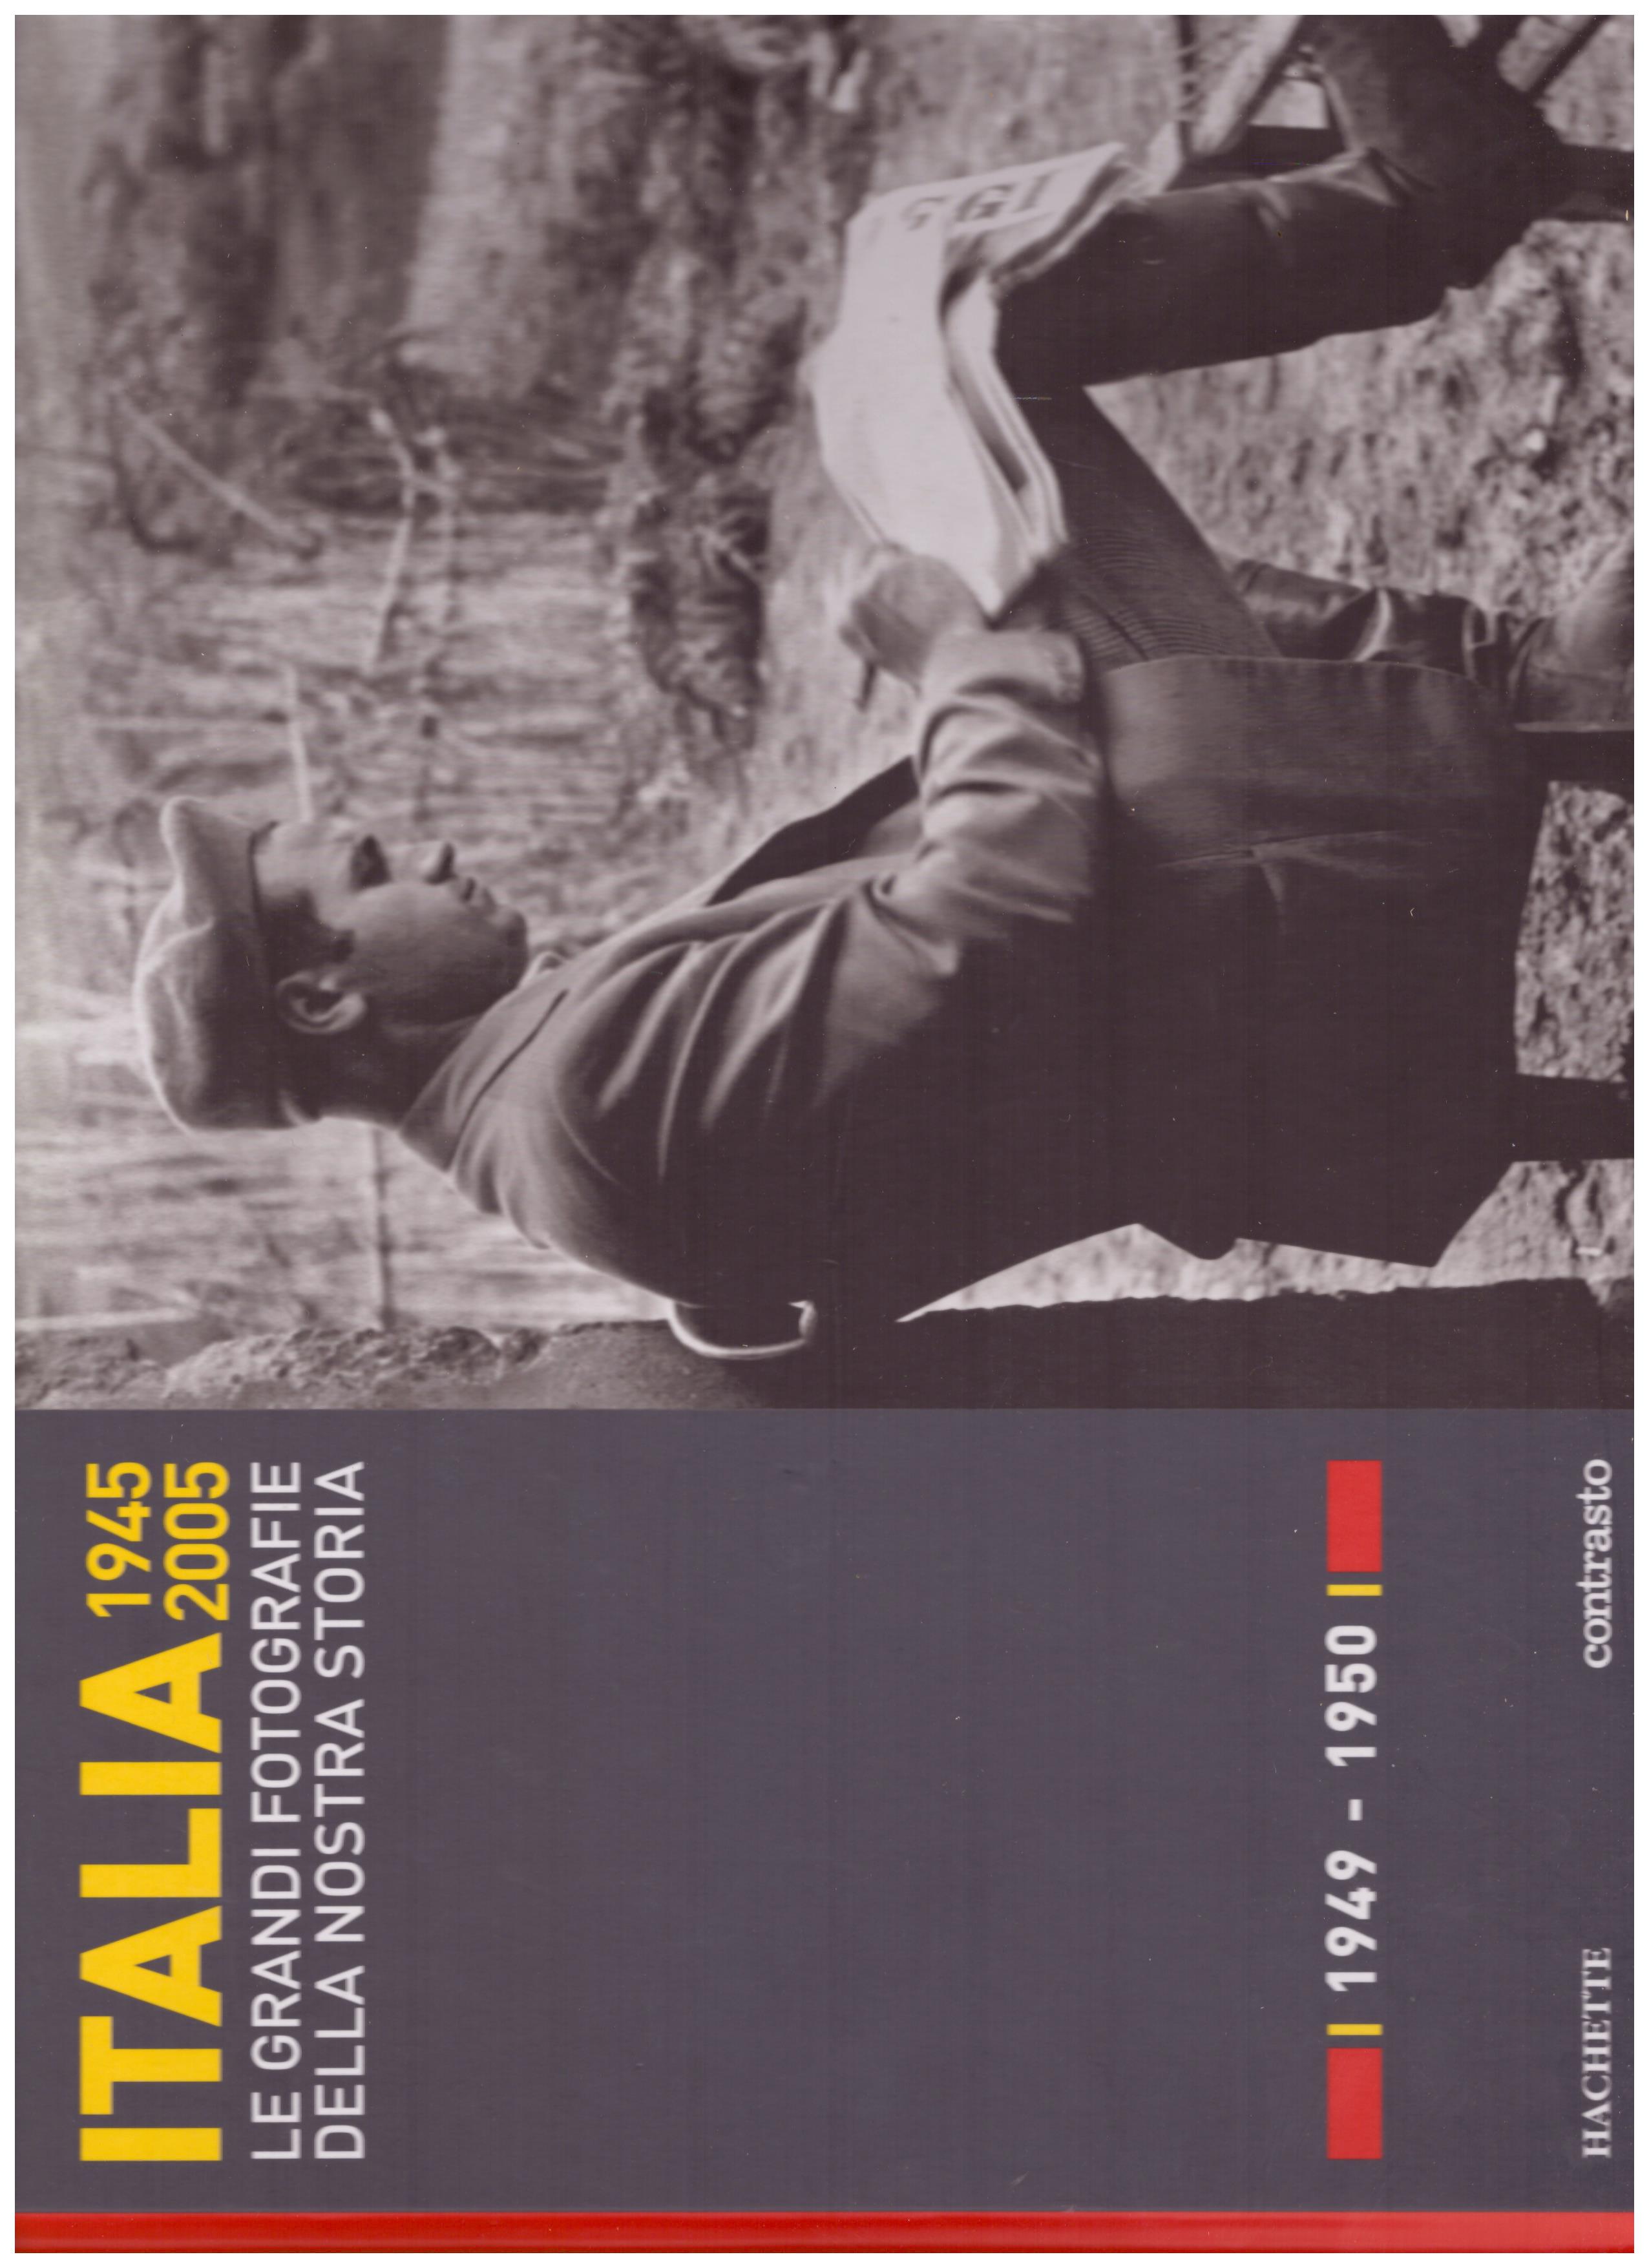 Titolo: Italia 1945-2005 le grandi fotografie della nostra storia, 1949-1950  Autore : AA.VV.   Editore: hachette, 2006